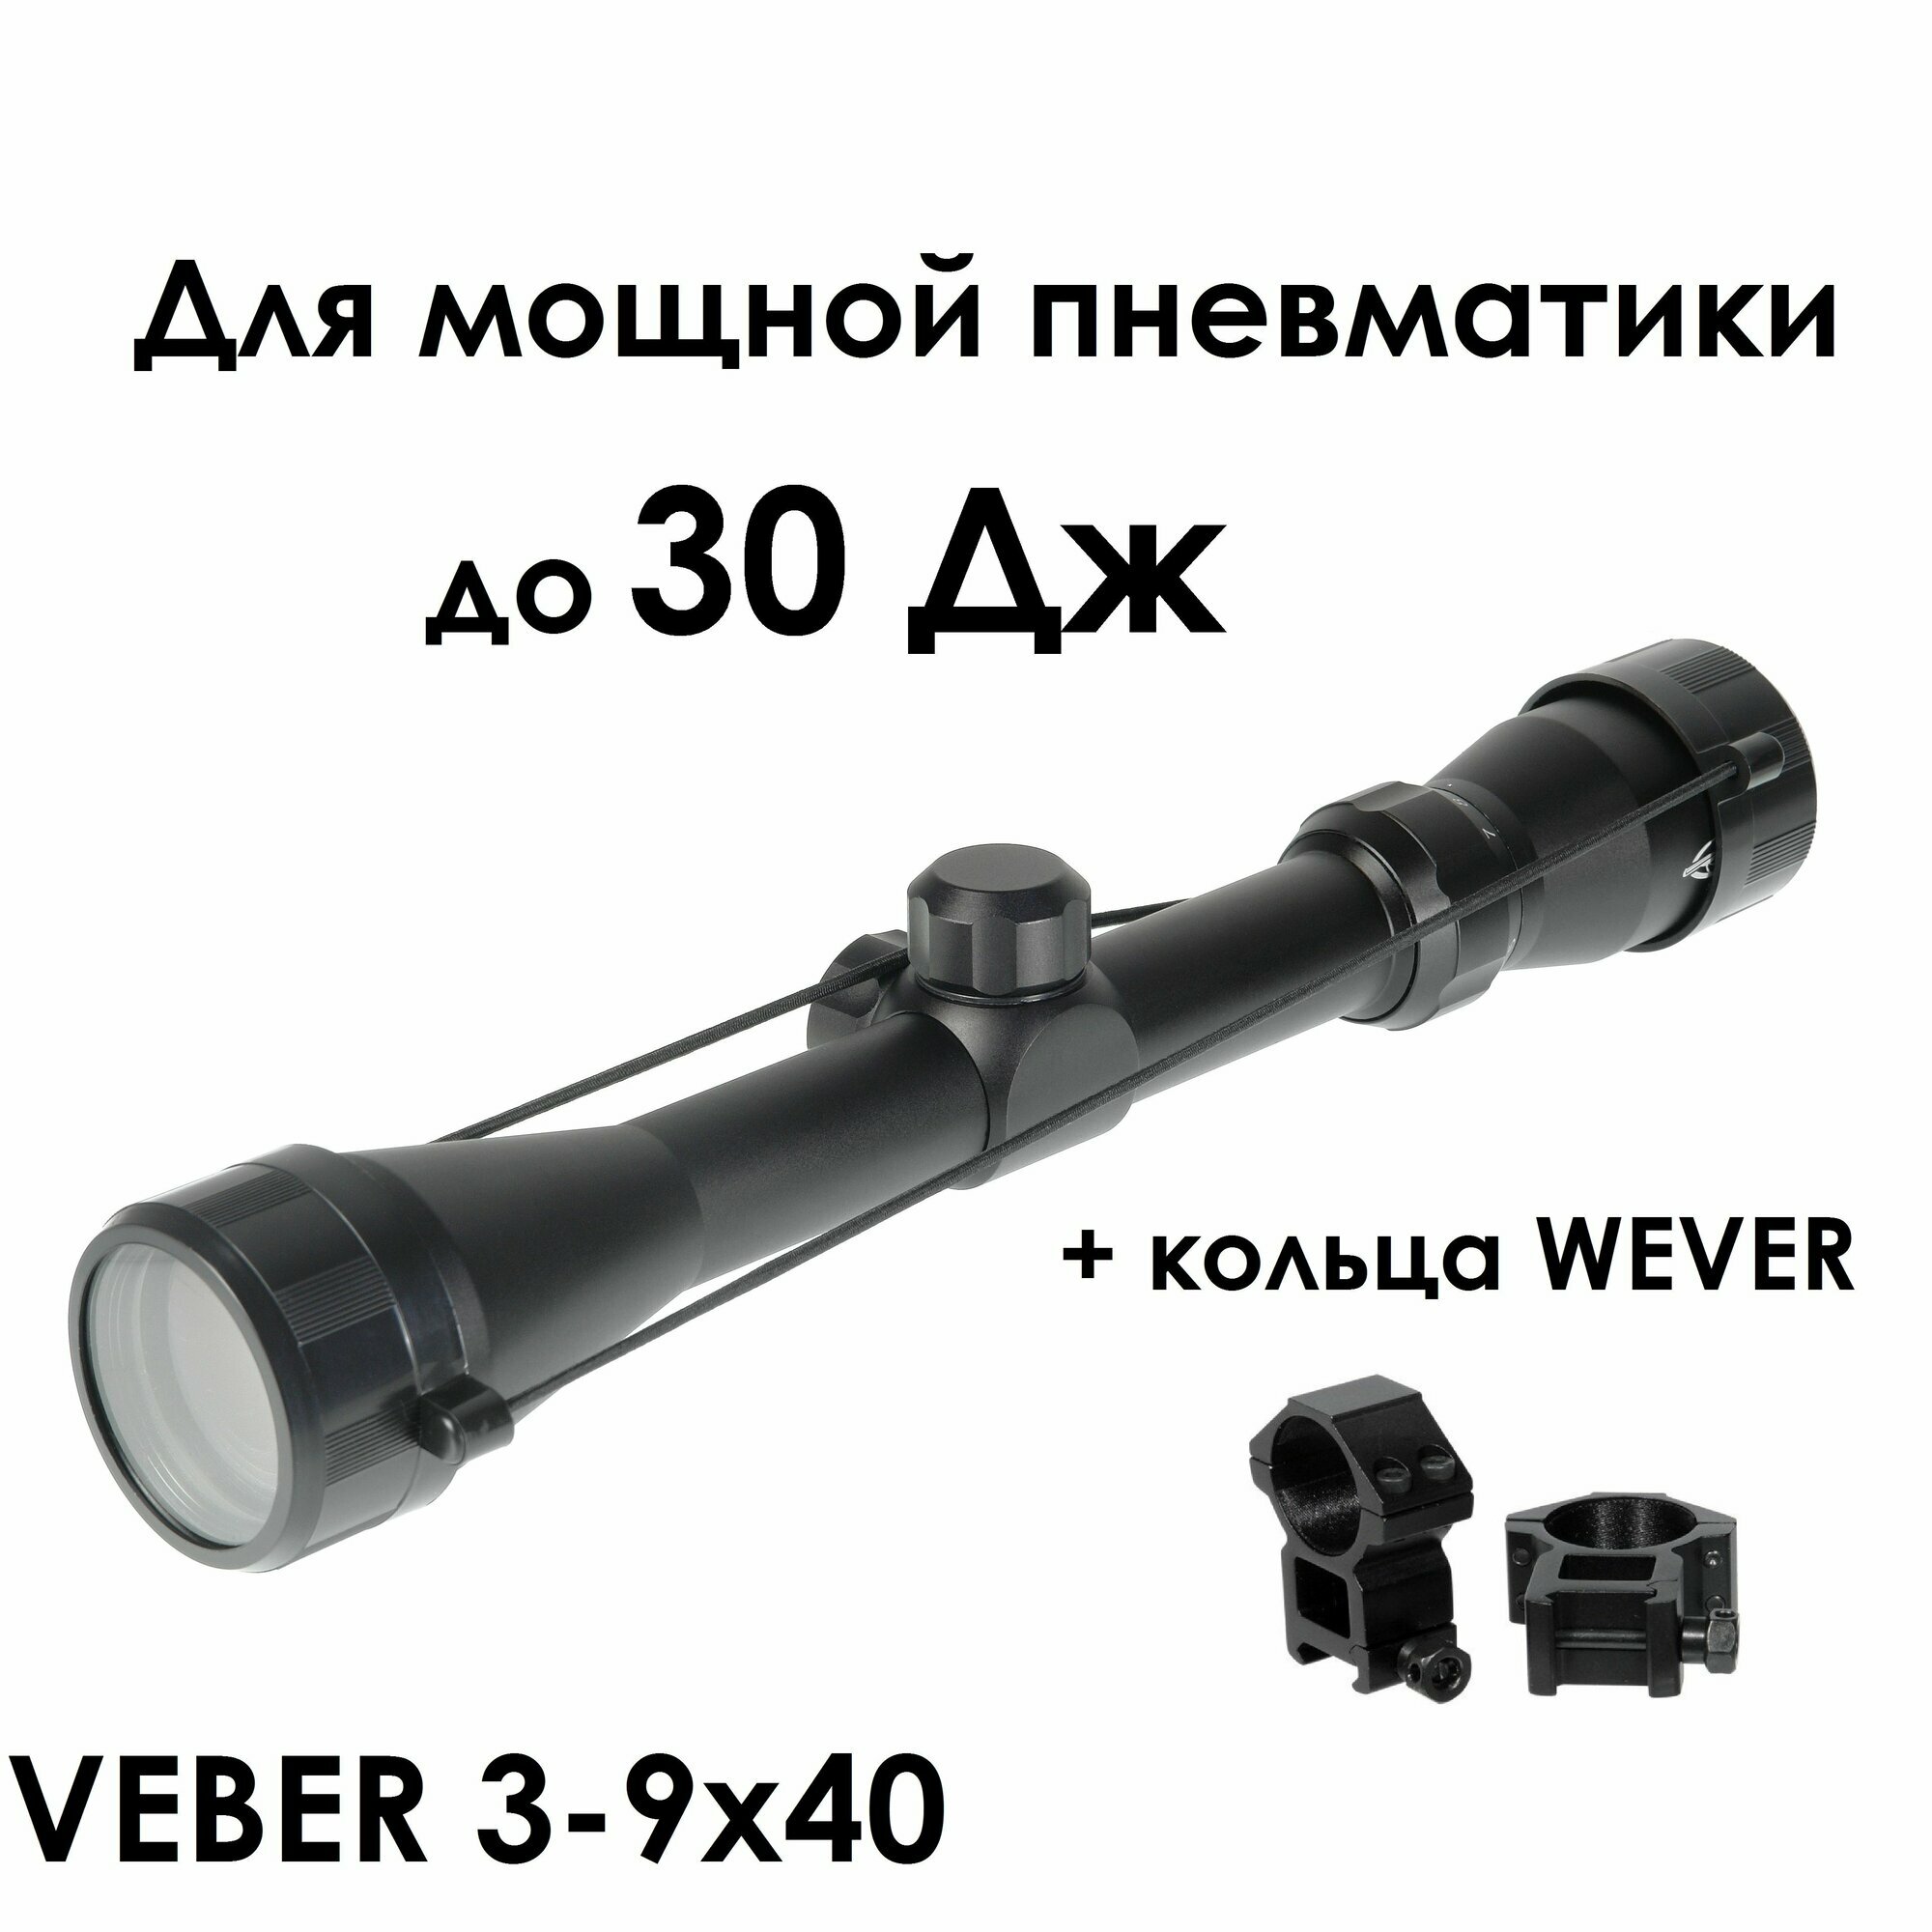 Оптический прицел VEBER "Храбрый заяц" 3-9x40 с кронштейном для Магнум пневматики (weaver)